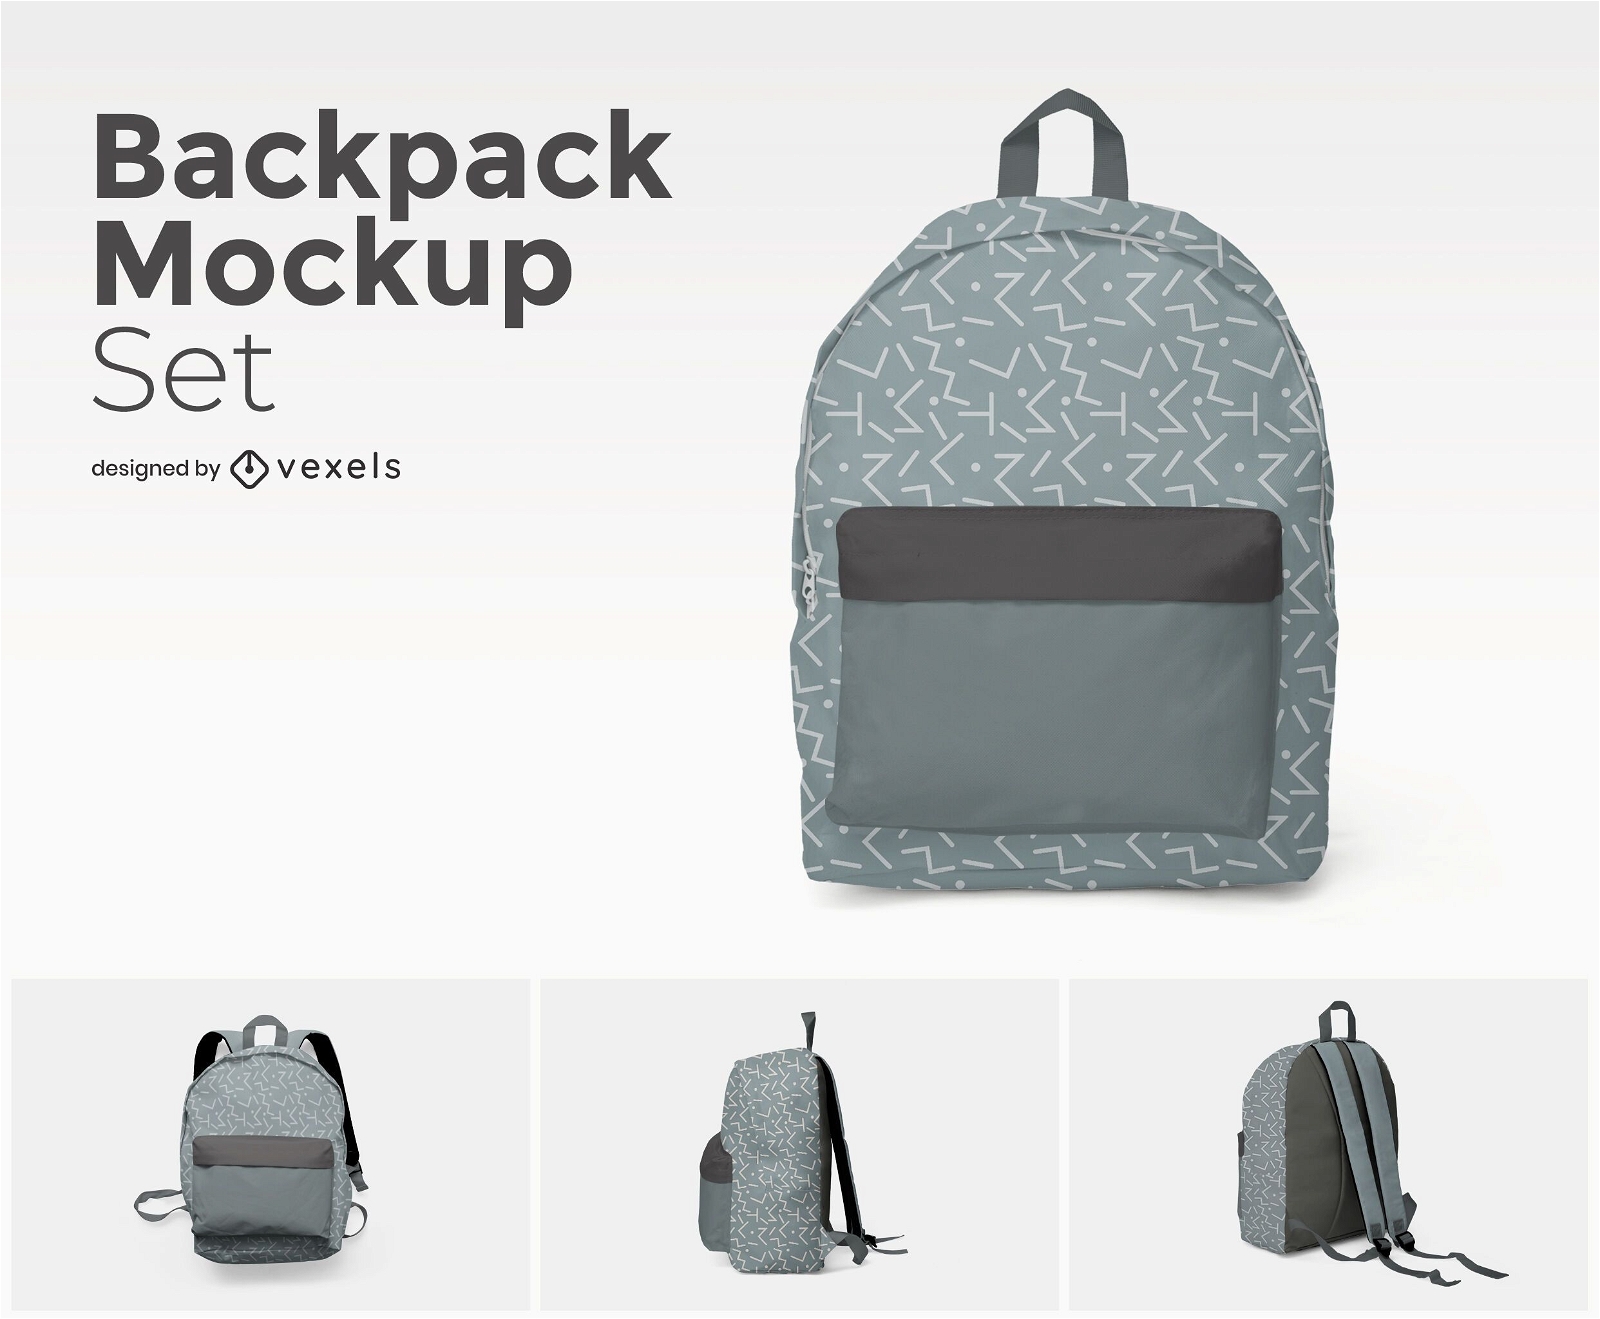 Backpack mockup set